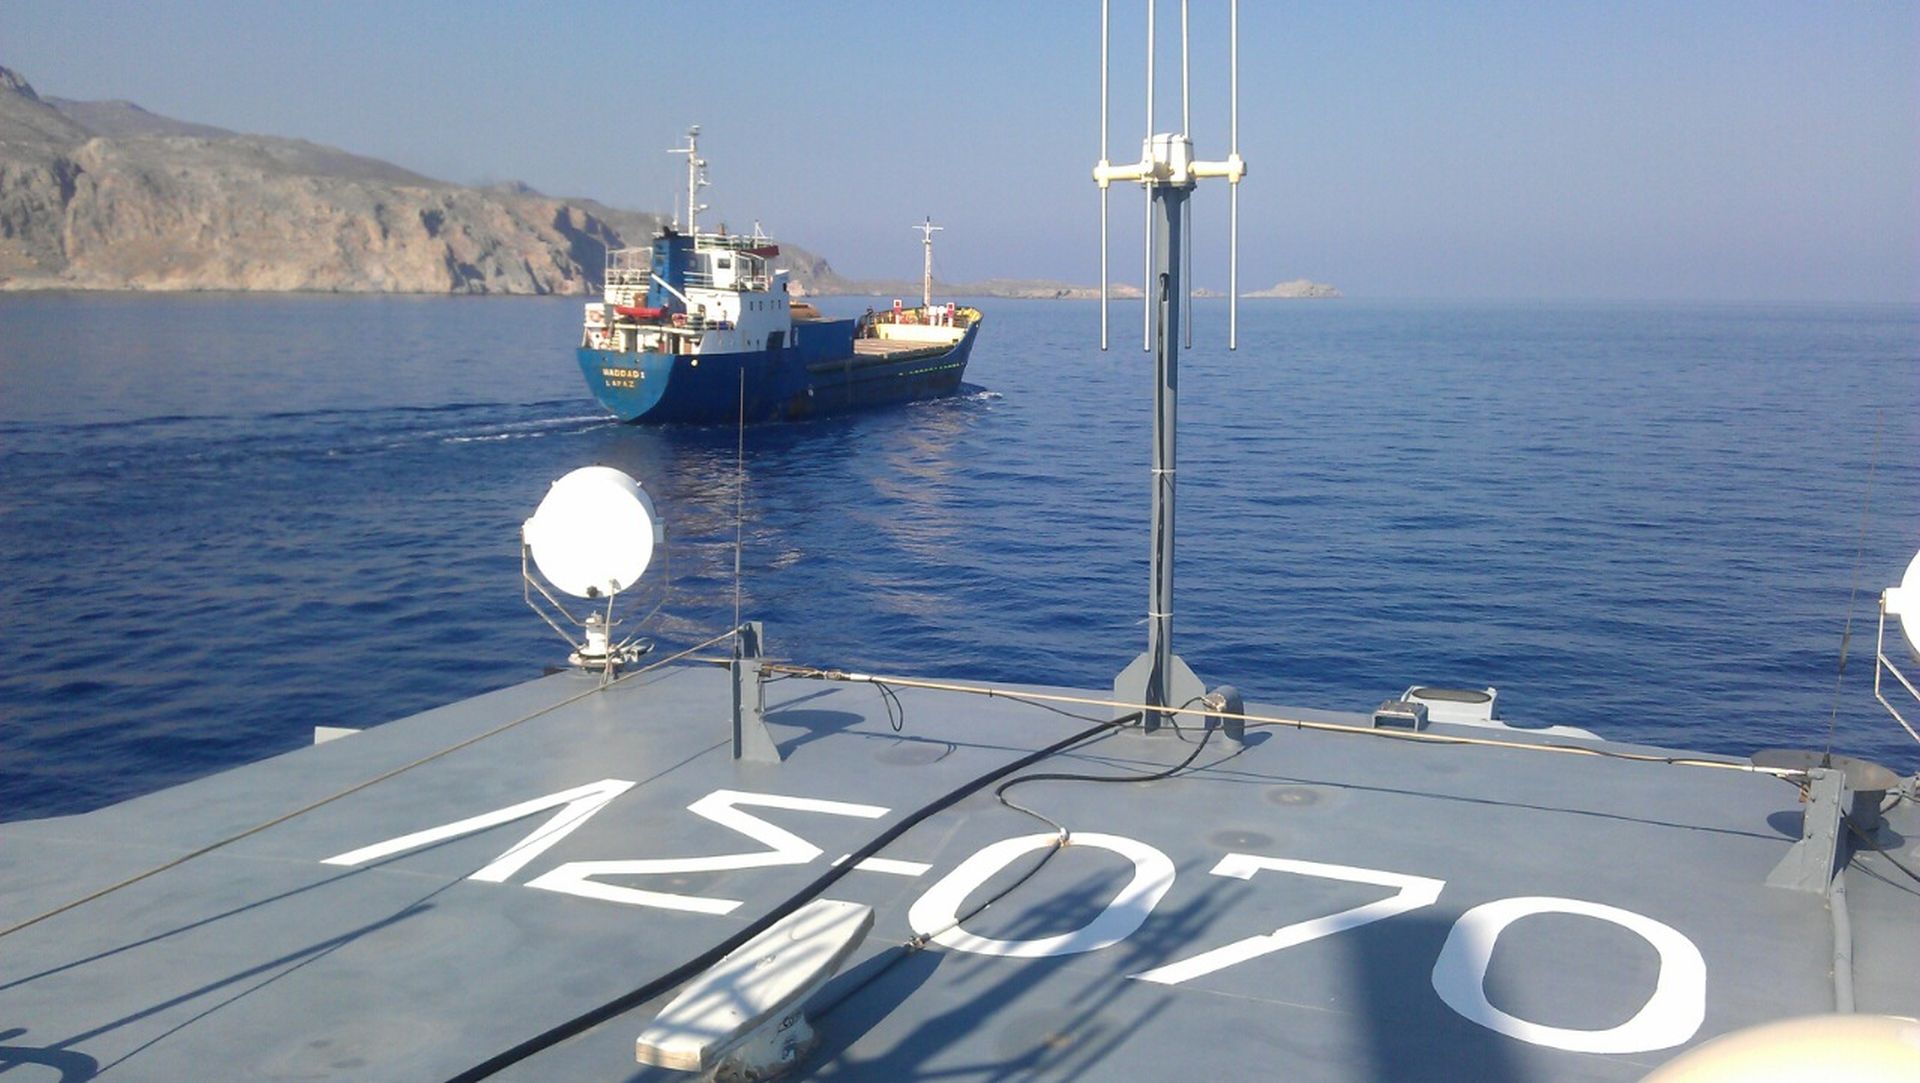 Θρίλερ στην Κρήτη με φορτηγό πλοίο σημαίας Συρίας και ύποπτο φορτίο